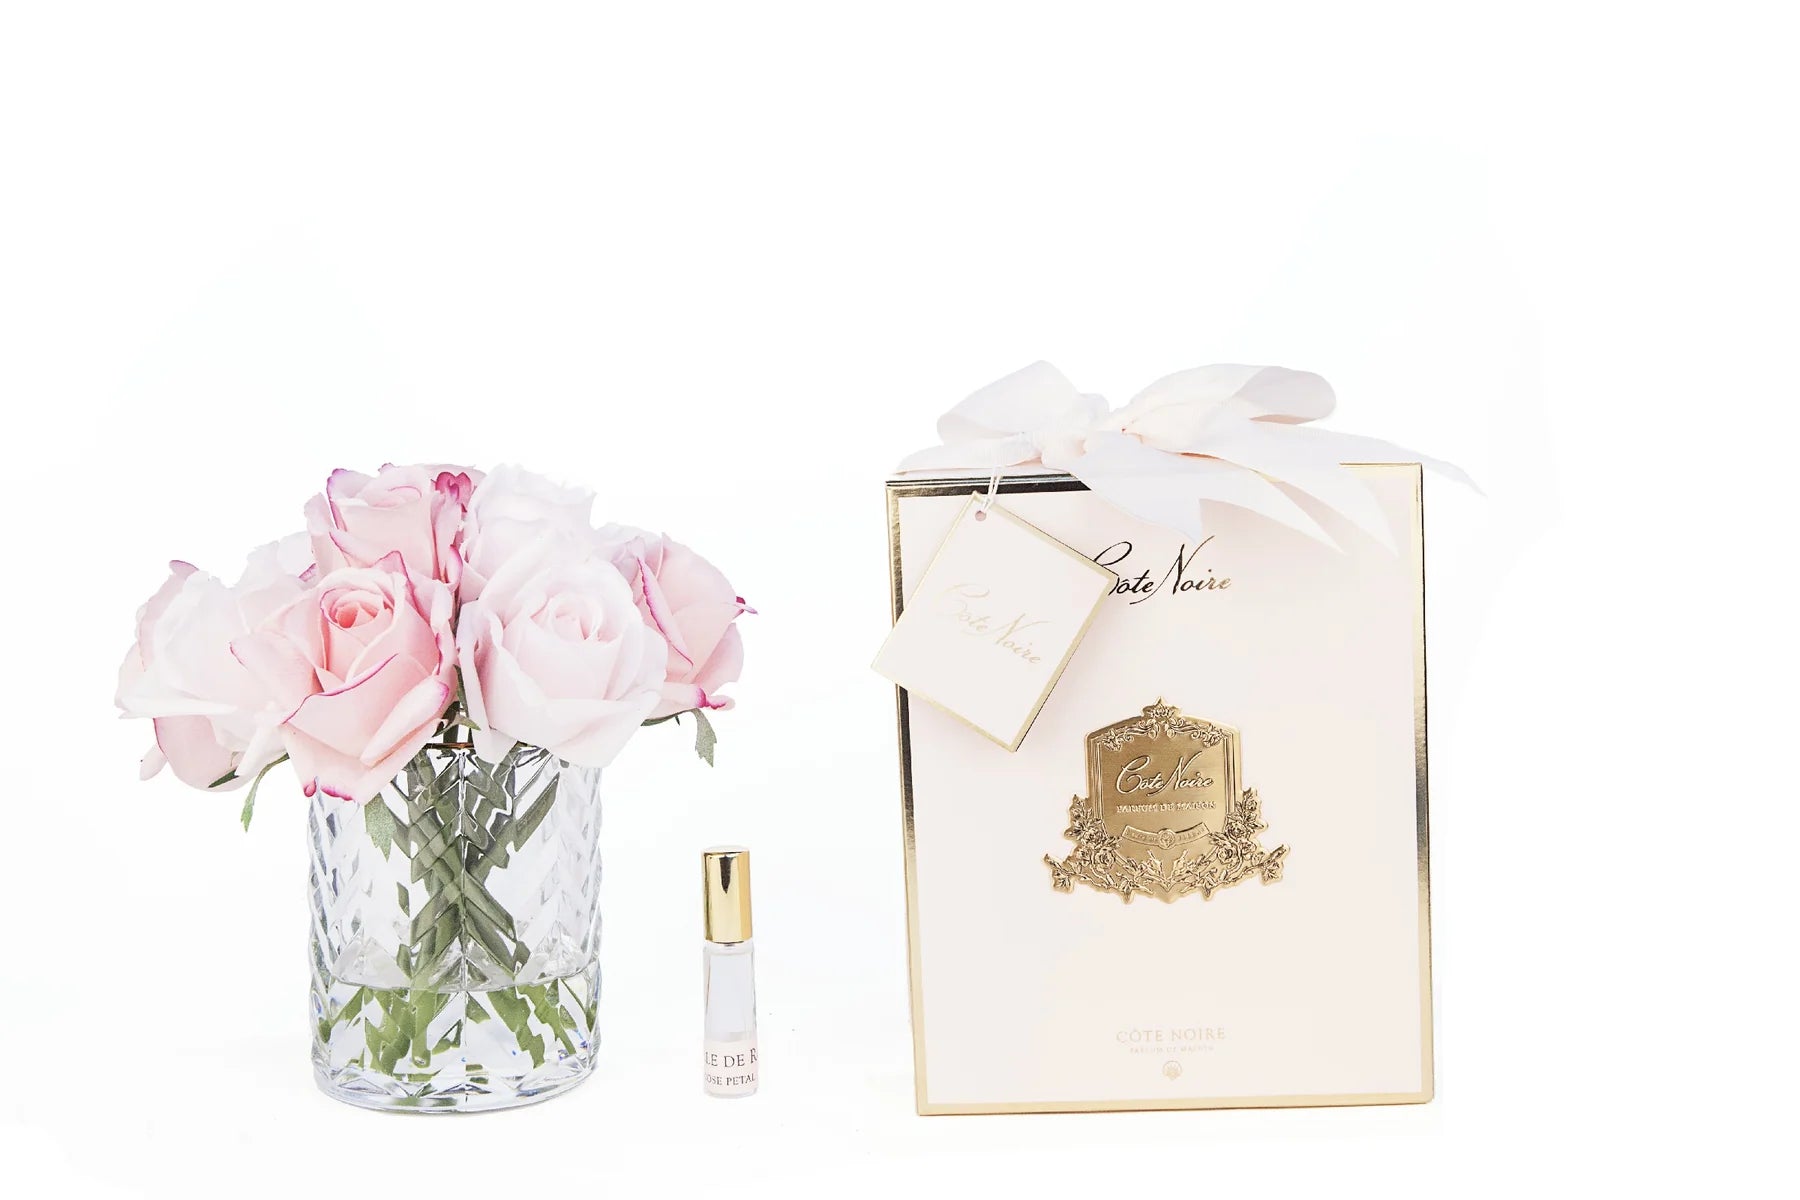 mixed pinke rosen in durchsichtigem glas mit muster. daneben zwei parfumsprays und rosa geschenkbox mit schleife.